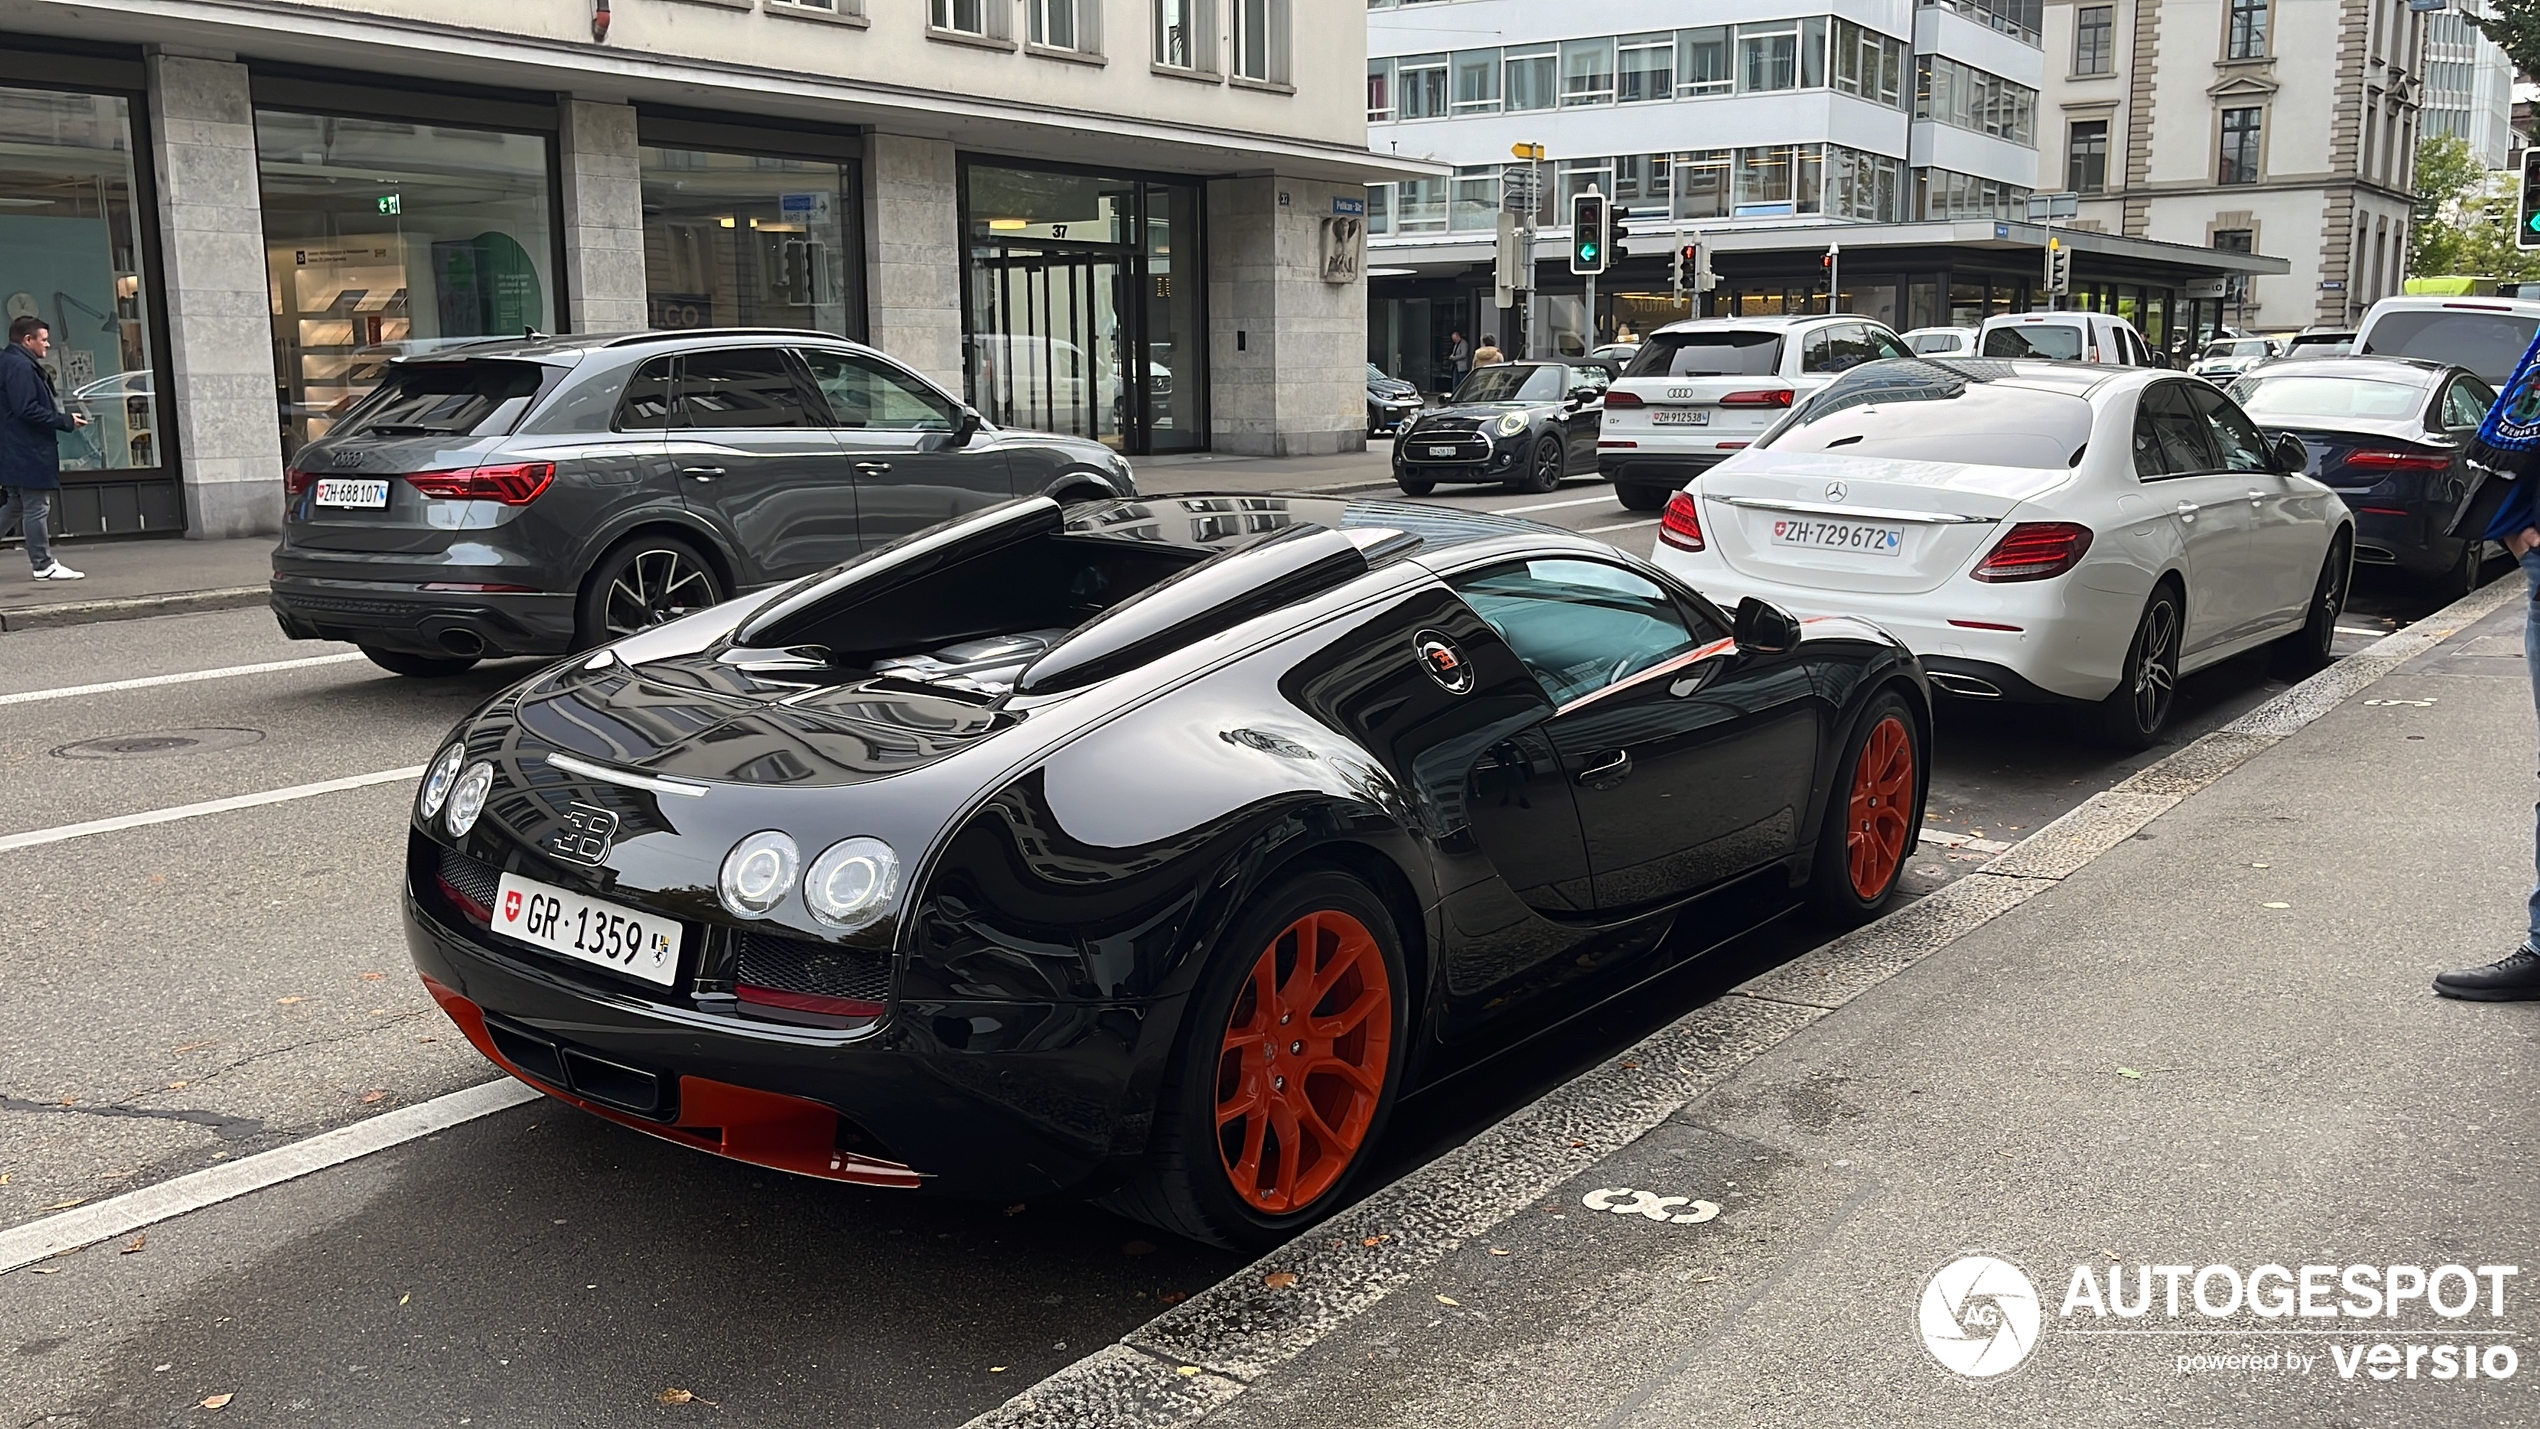 Ook in Zürich is de Bugatti populatie hoog